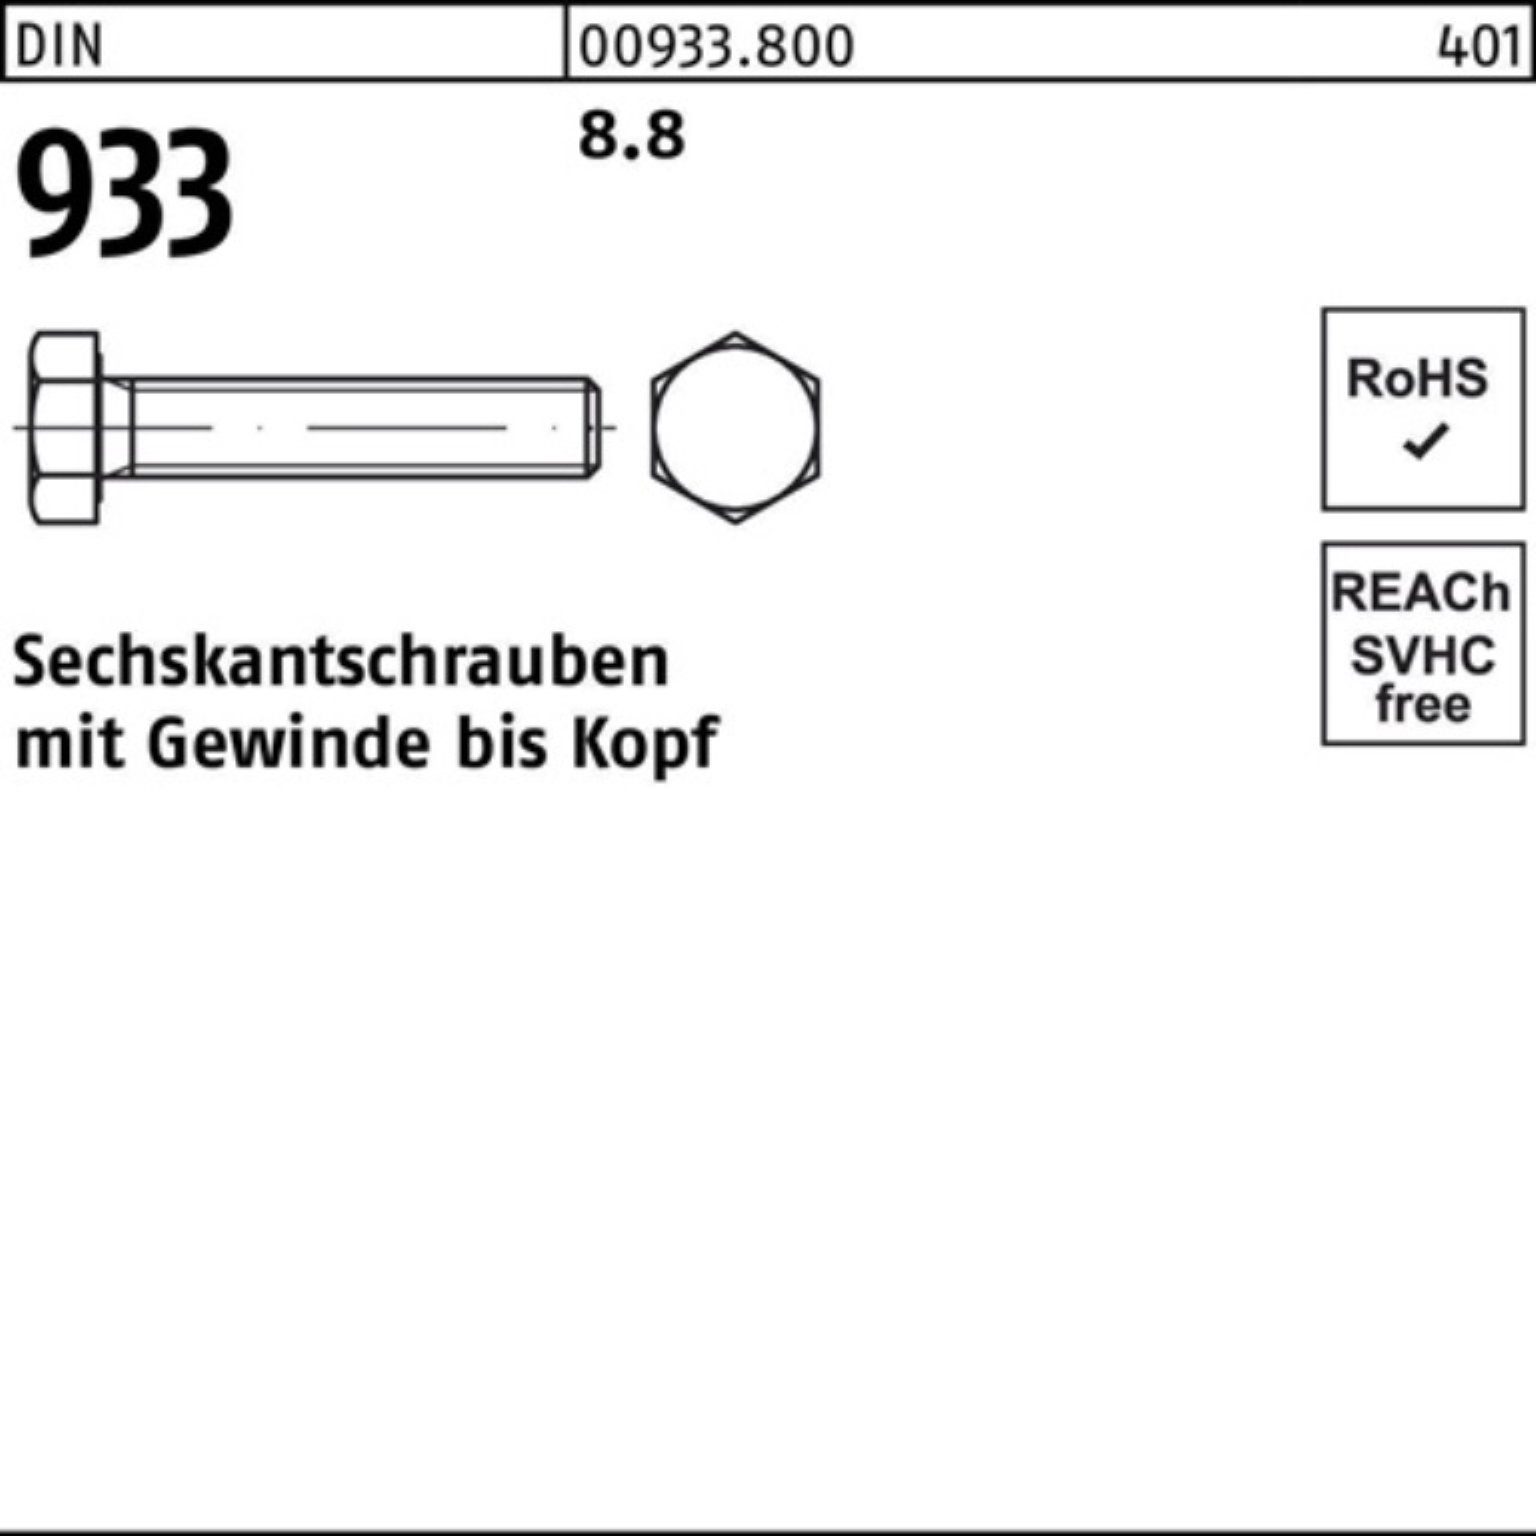 Reyher Sechskantschraube 933 10 933 M3x Sechskantschraube 8.8 DIN Pack DIN VG Stück 500er 500